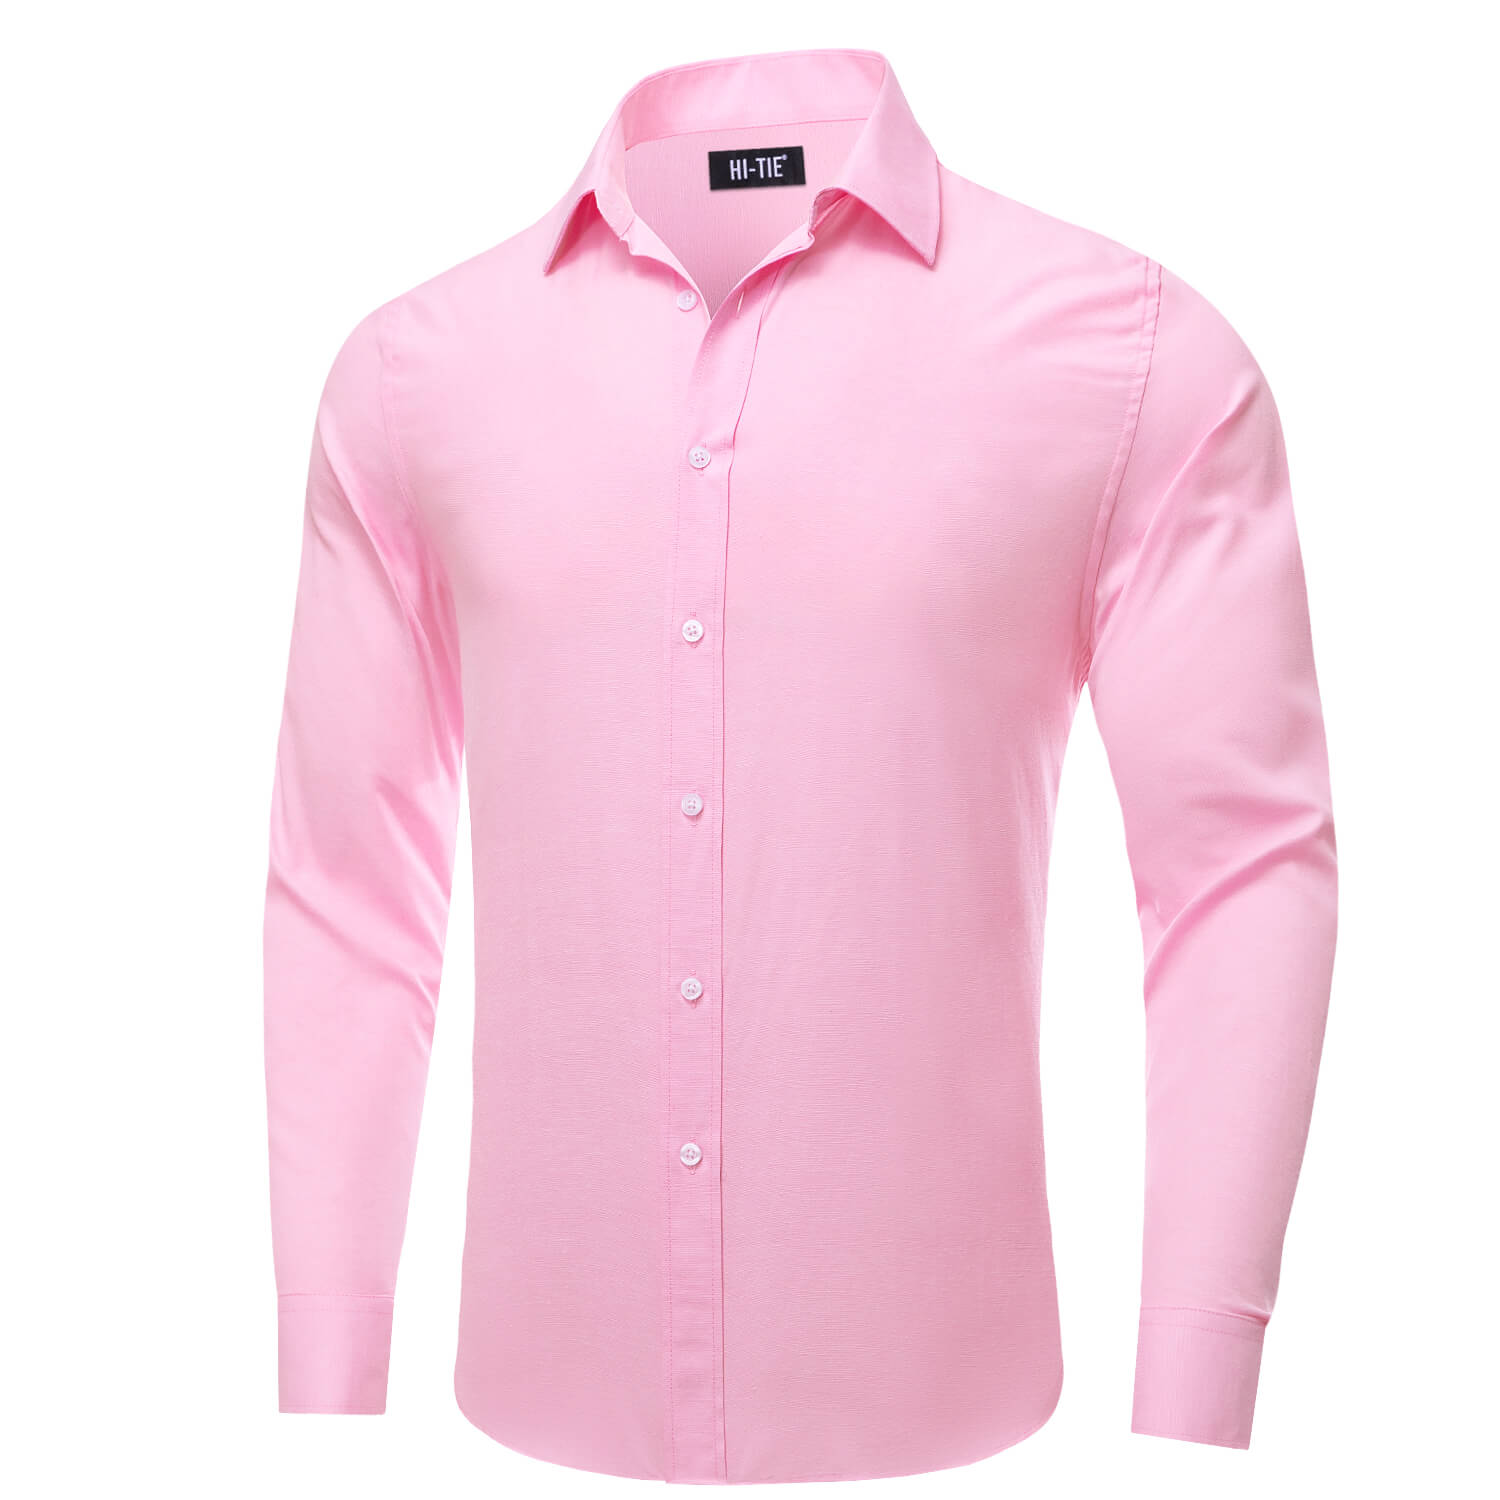 Hi-Tie Button Down Shirt Light Pink Solid Silk Men's Dress Shirt High Quality